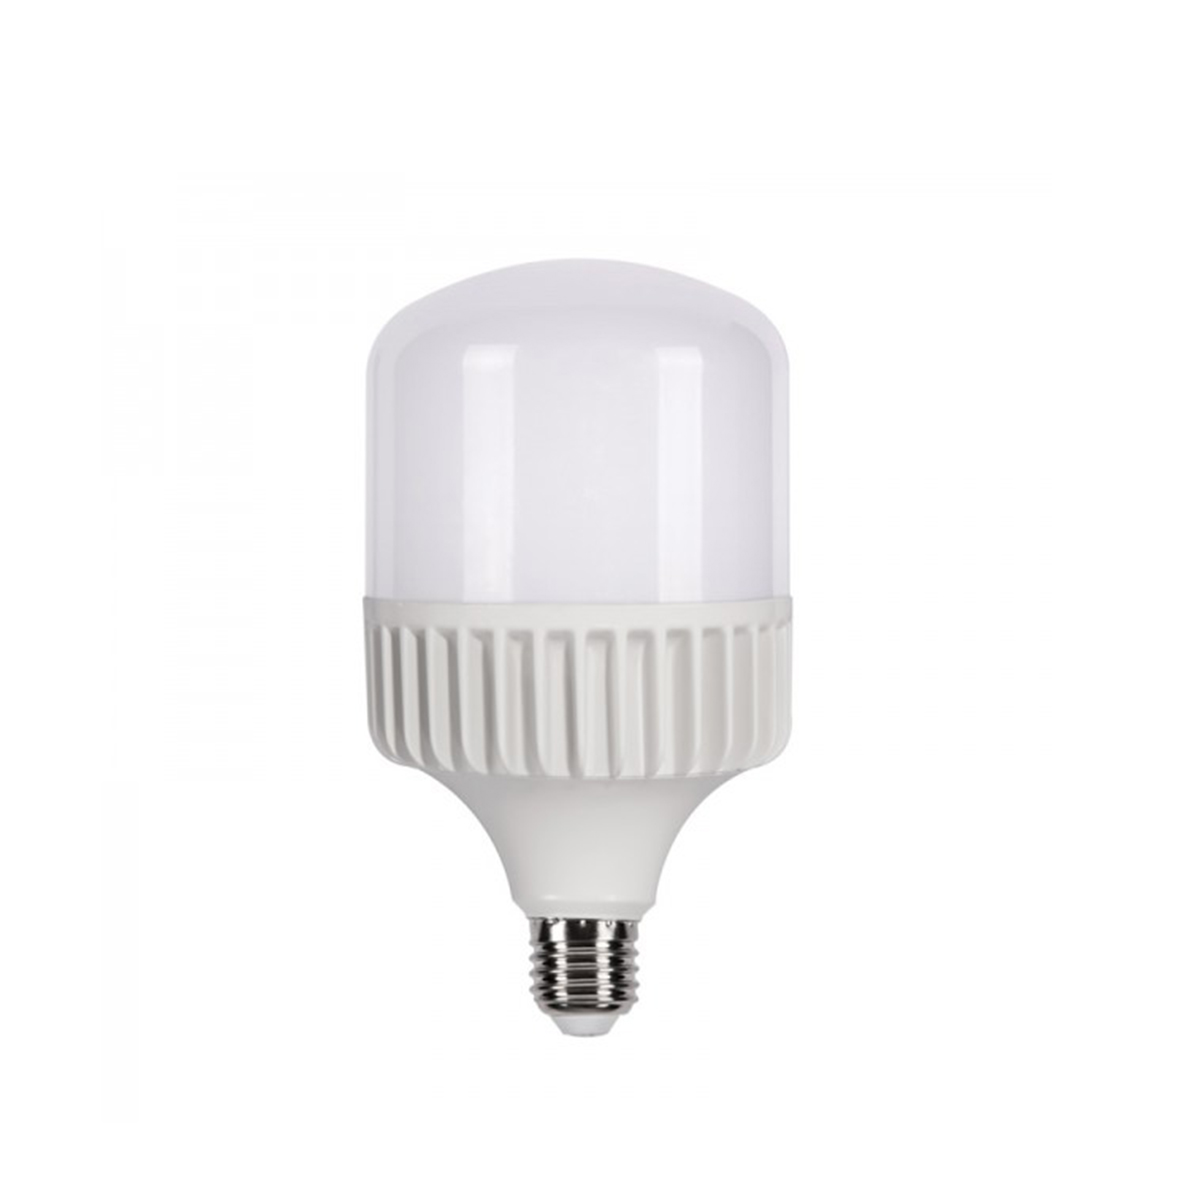 خرید و پخش عمده قطعات لامپ LED ۴٠وات